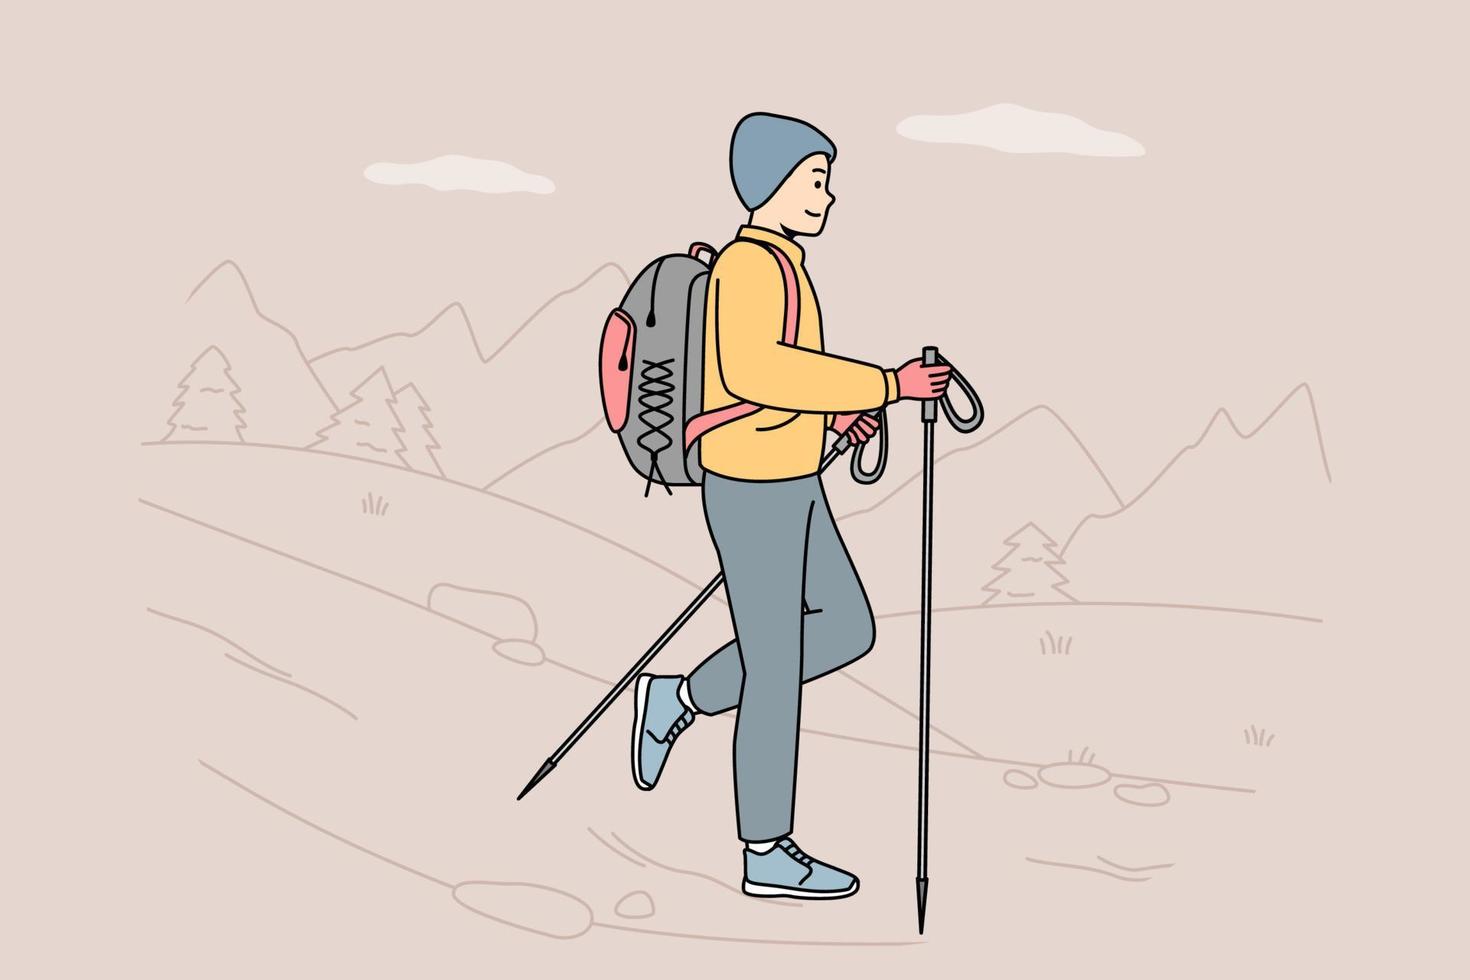 cara com mochila, bastões para caminhada nórdica na natureza. homem envolvido em camping, turismo, viagens. viagem de mochila. estilo de vida ativo e saudável. ilustração colorida de linha de contorno em vetor. vetor